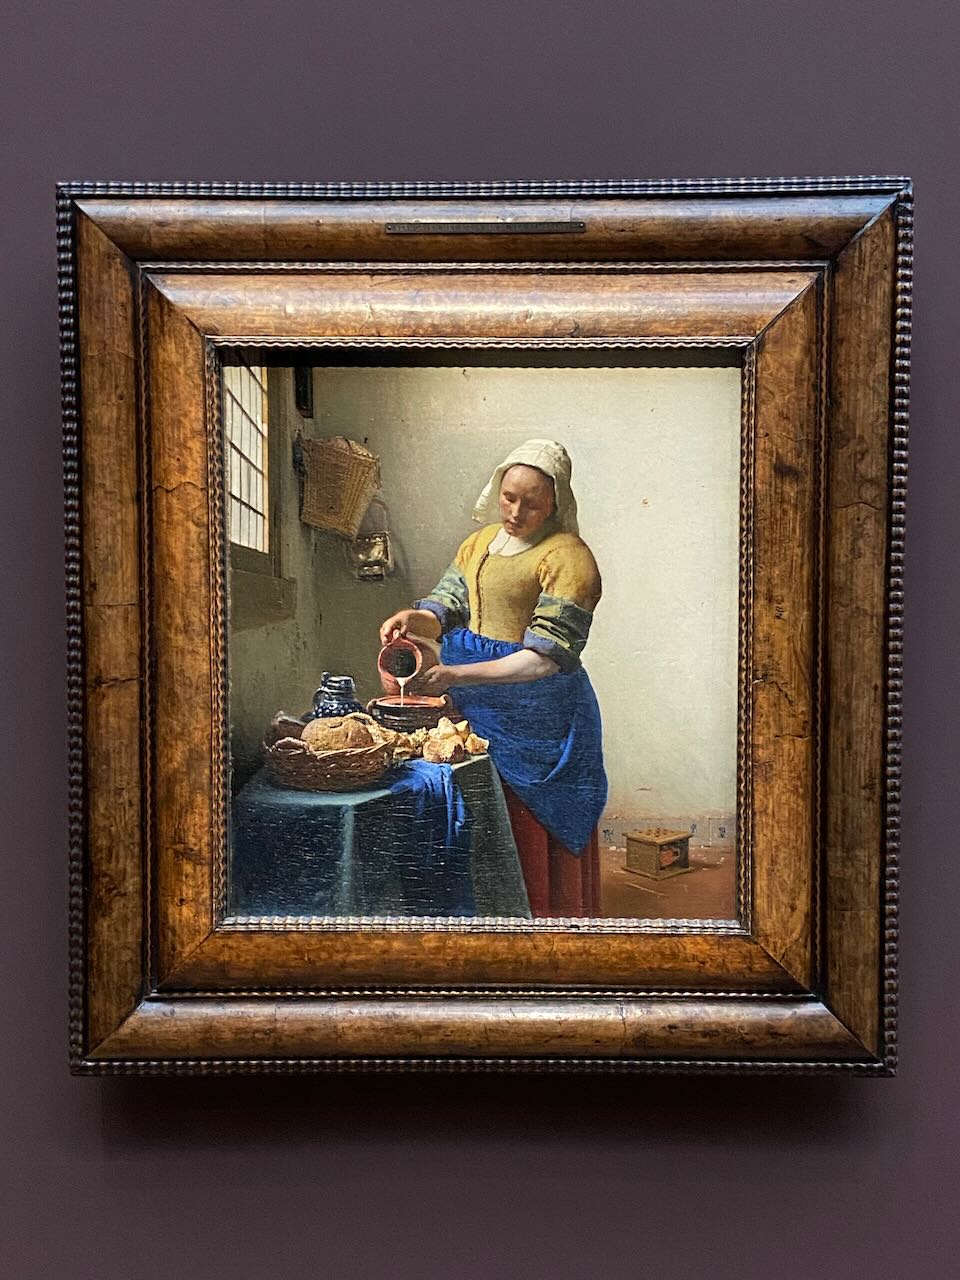 Vermeer's Milkmaid painting